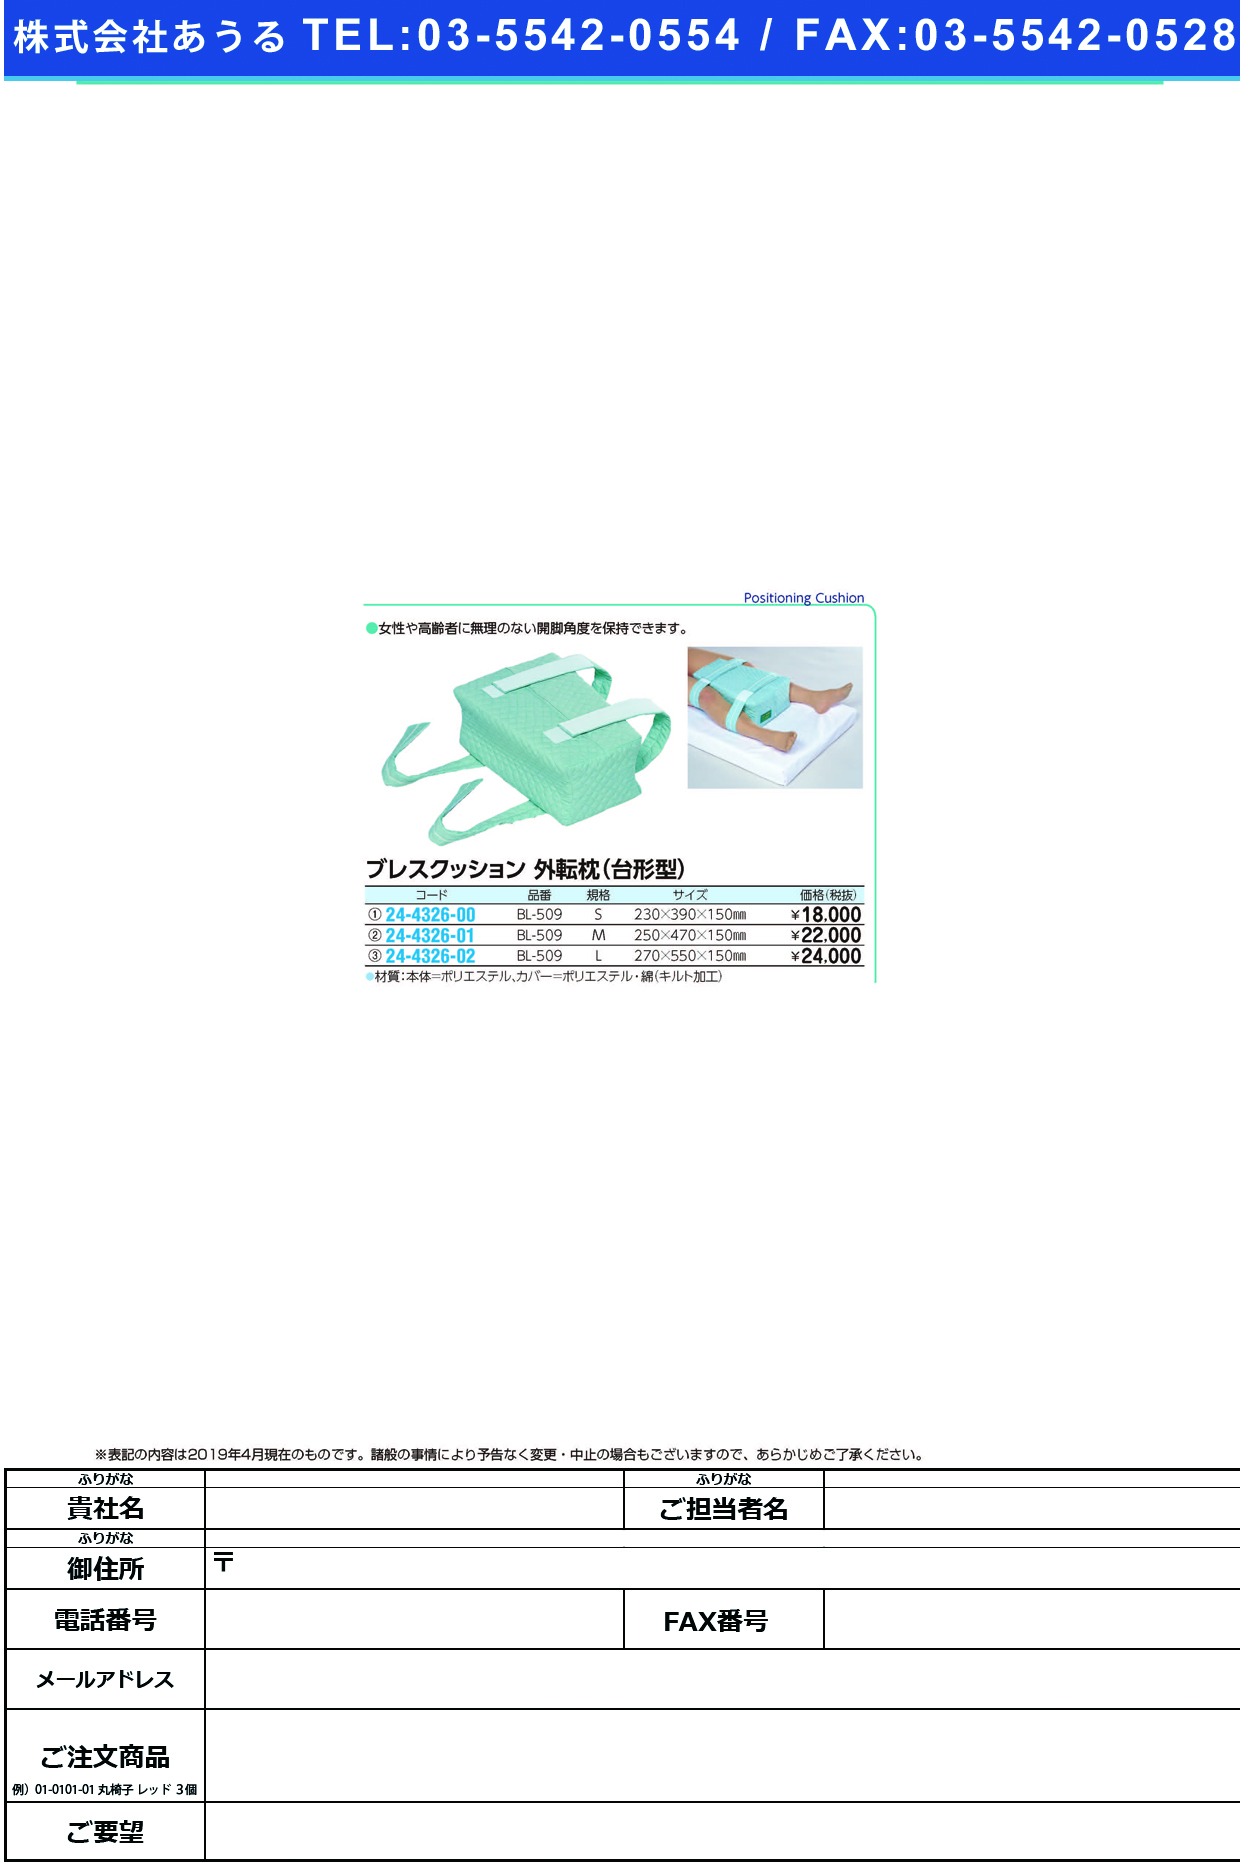 (24-4326-00)ブレスクッション（外転枕・台形型） BL-509(S) ﾌﾞﾚｽｸｯｼｮﾝ(ｶﾞｲﾃﾝﾏｸﾗ)【1個単位】【2019年カタログ商品】